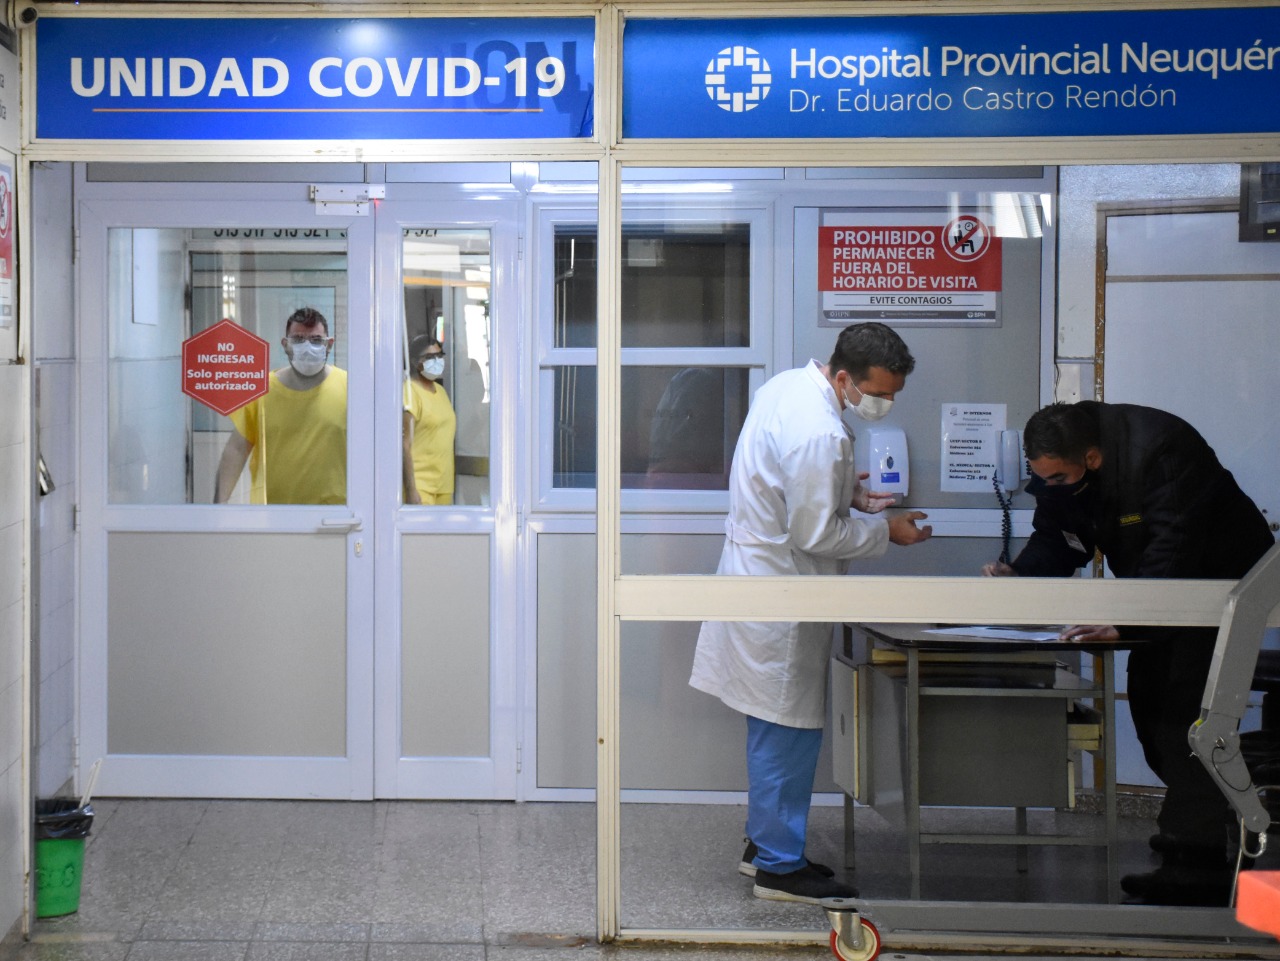 La Unidad Covid fue montada en el quinto piso del hospital Castro Rendón. Foto Florencia Salto.